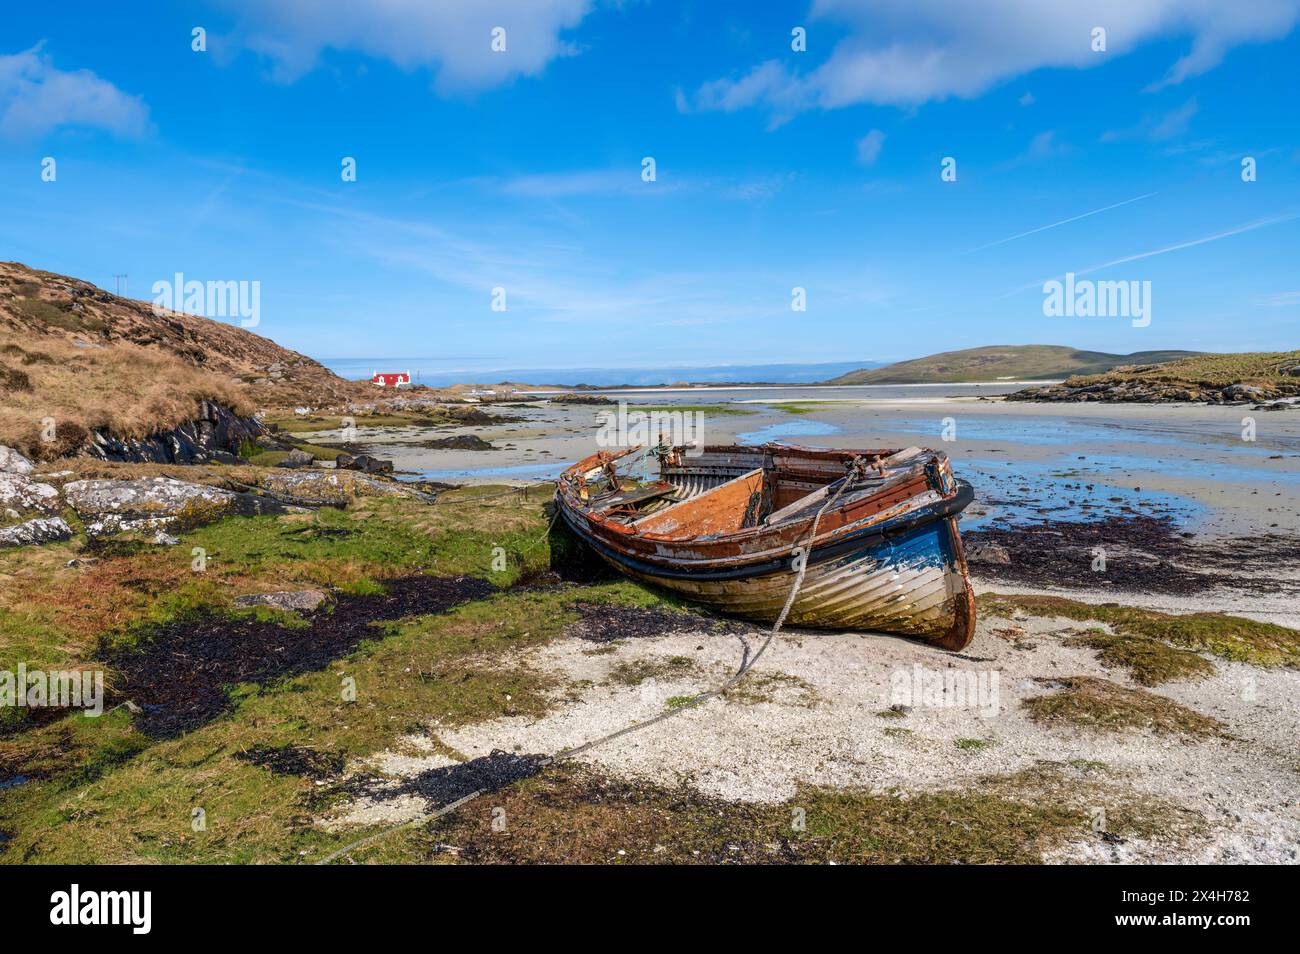 Vecchia barca da pesca a Traigh Mhor, l'isola di barra, Scozia. Foto Stock